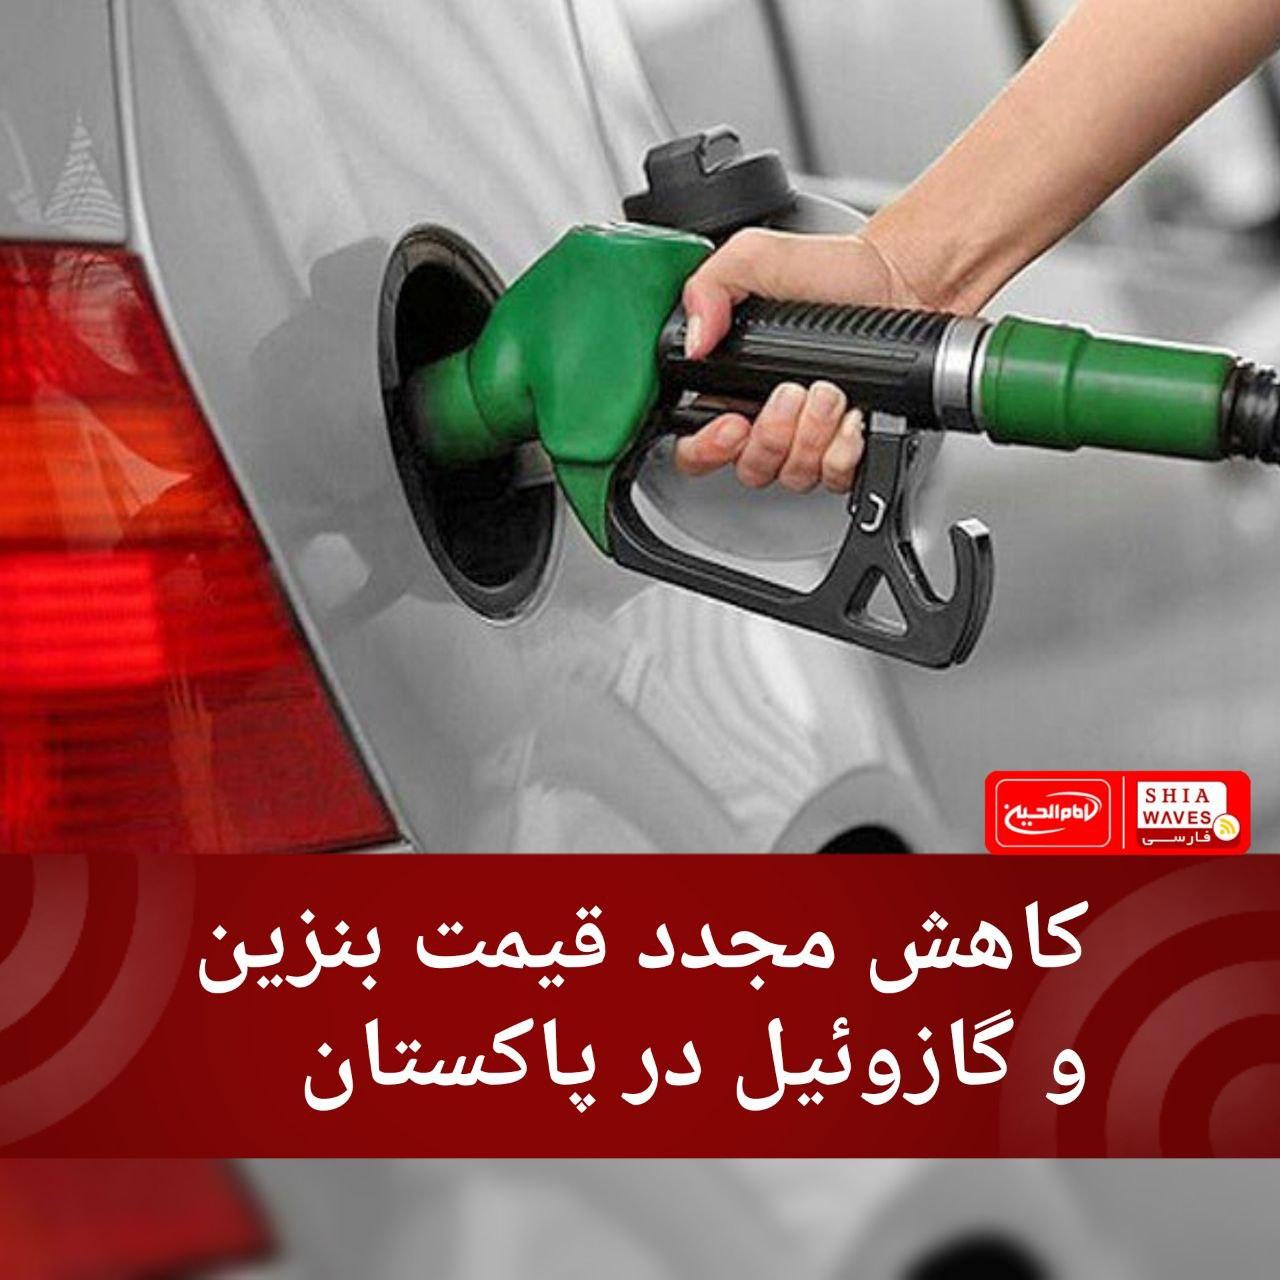 تصویر کاهش مجدد قیمت بنزین و گازوئیل در پاکستان